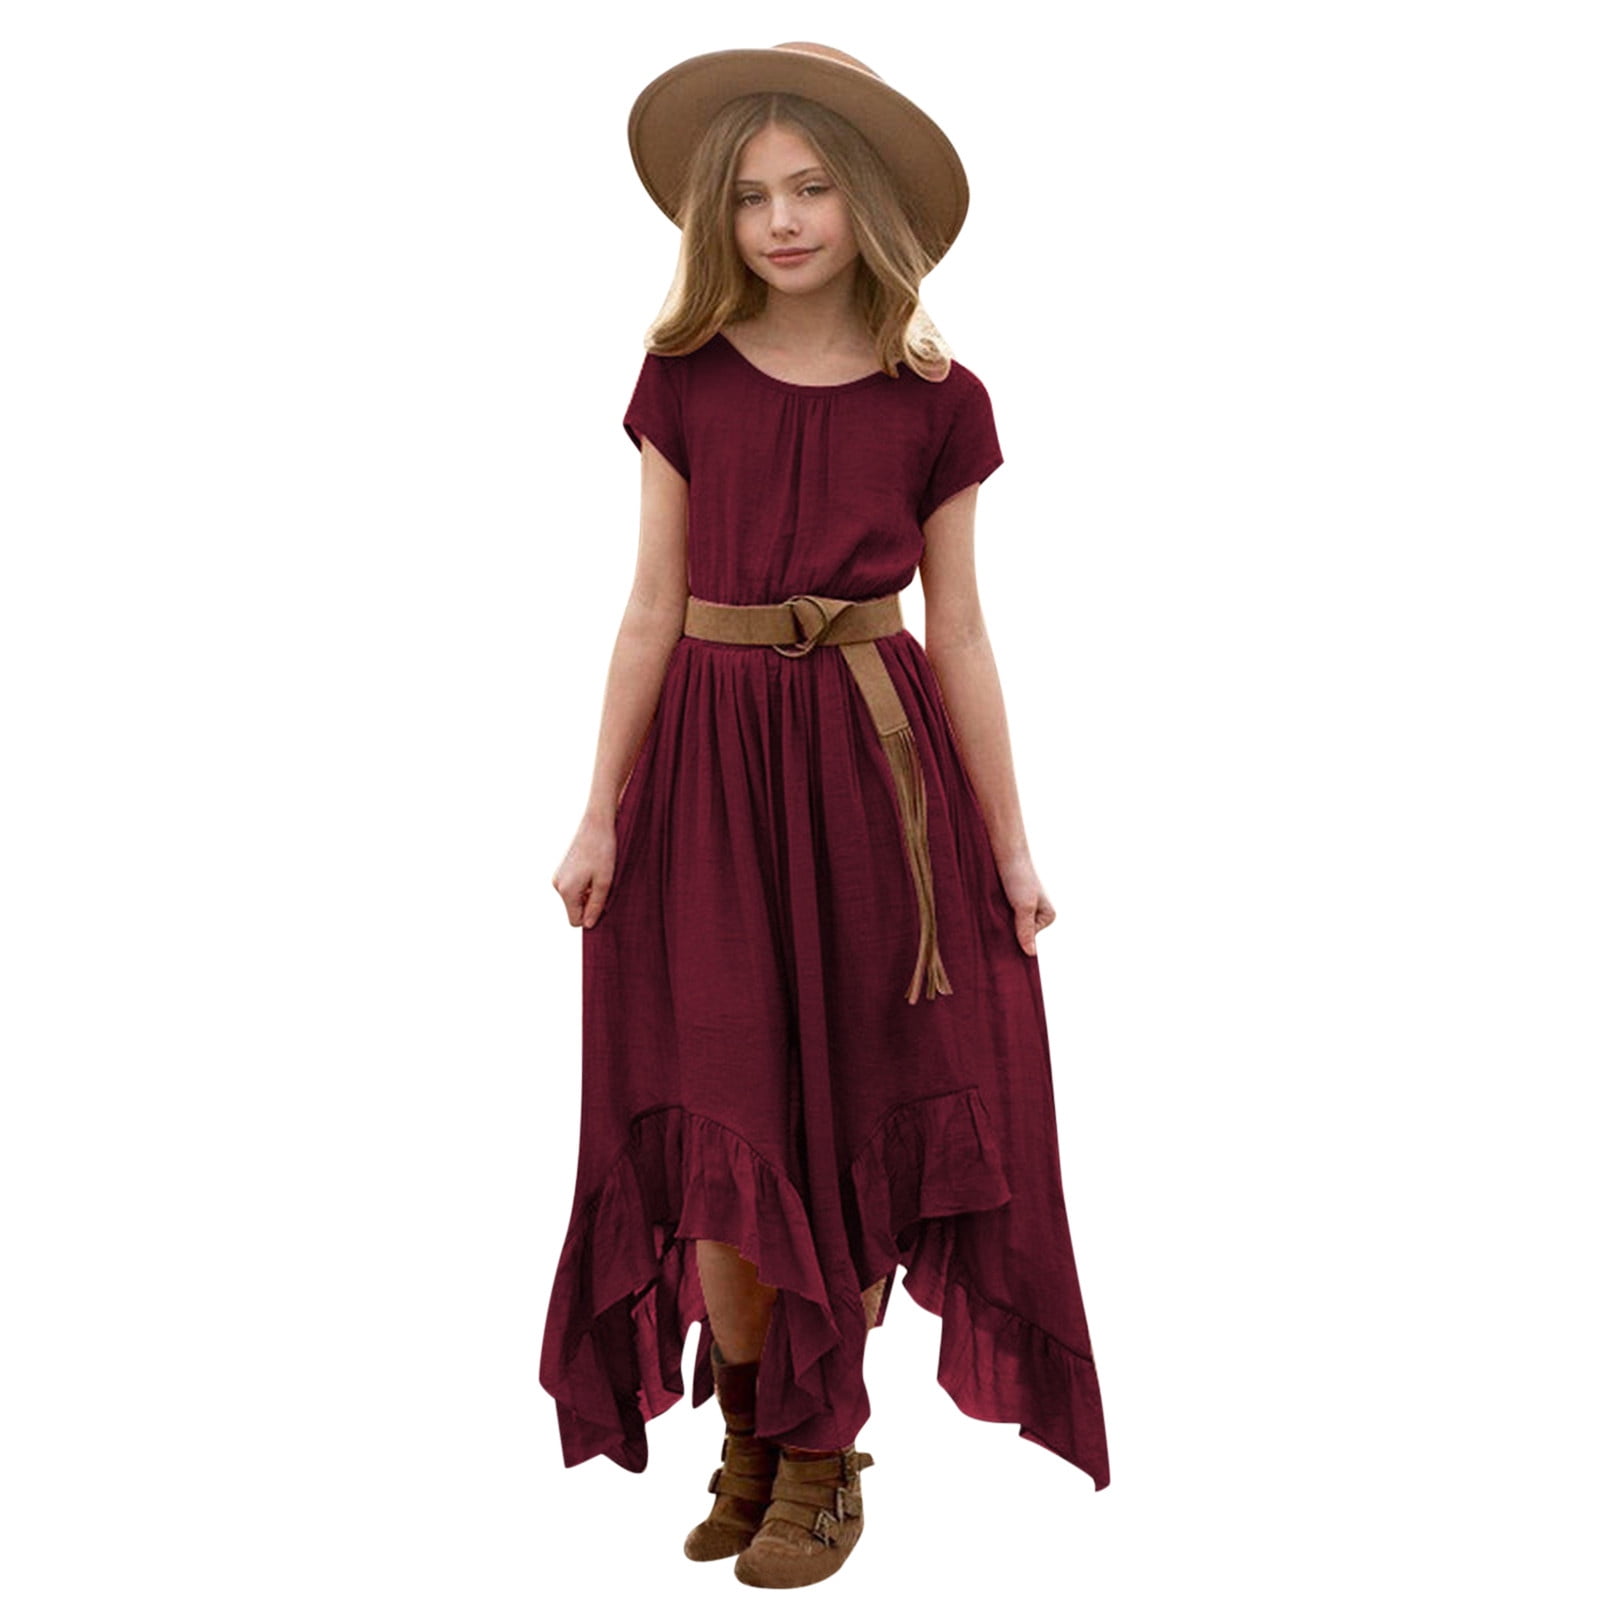 ZMHEGW Dresses For Teens Girls Little Vintage Dress Solid Short